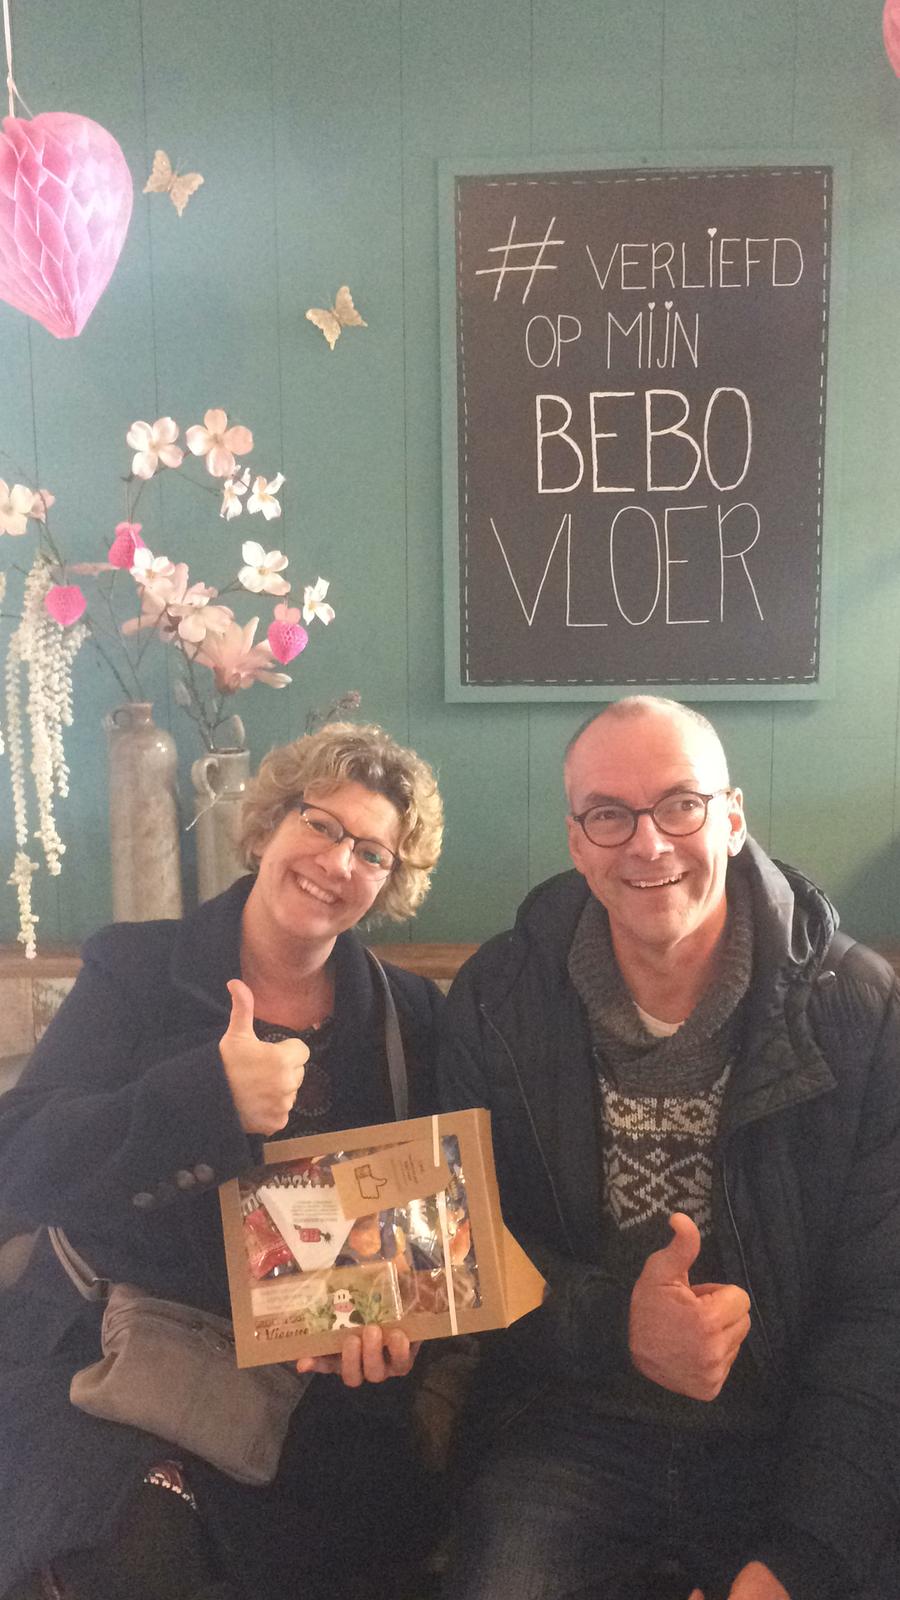 Joob uit Zwolle is goed geholpen door Gerlo en gaat super blij naar huis